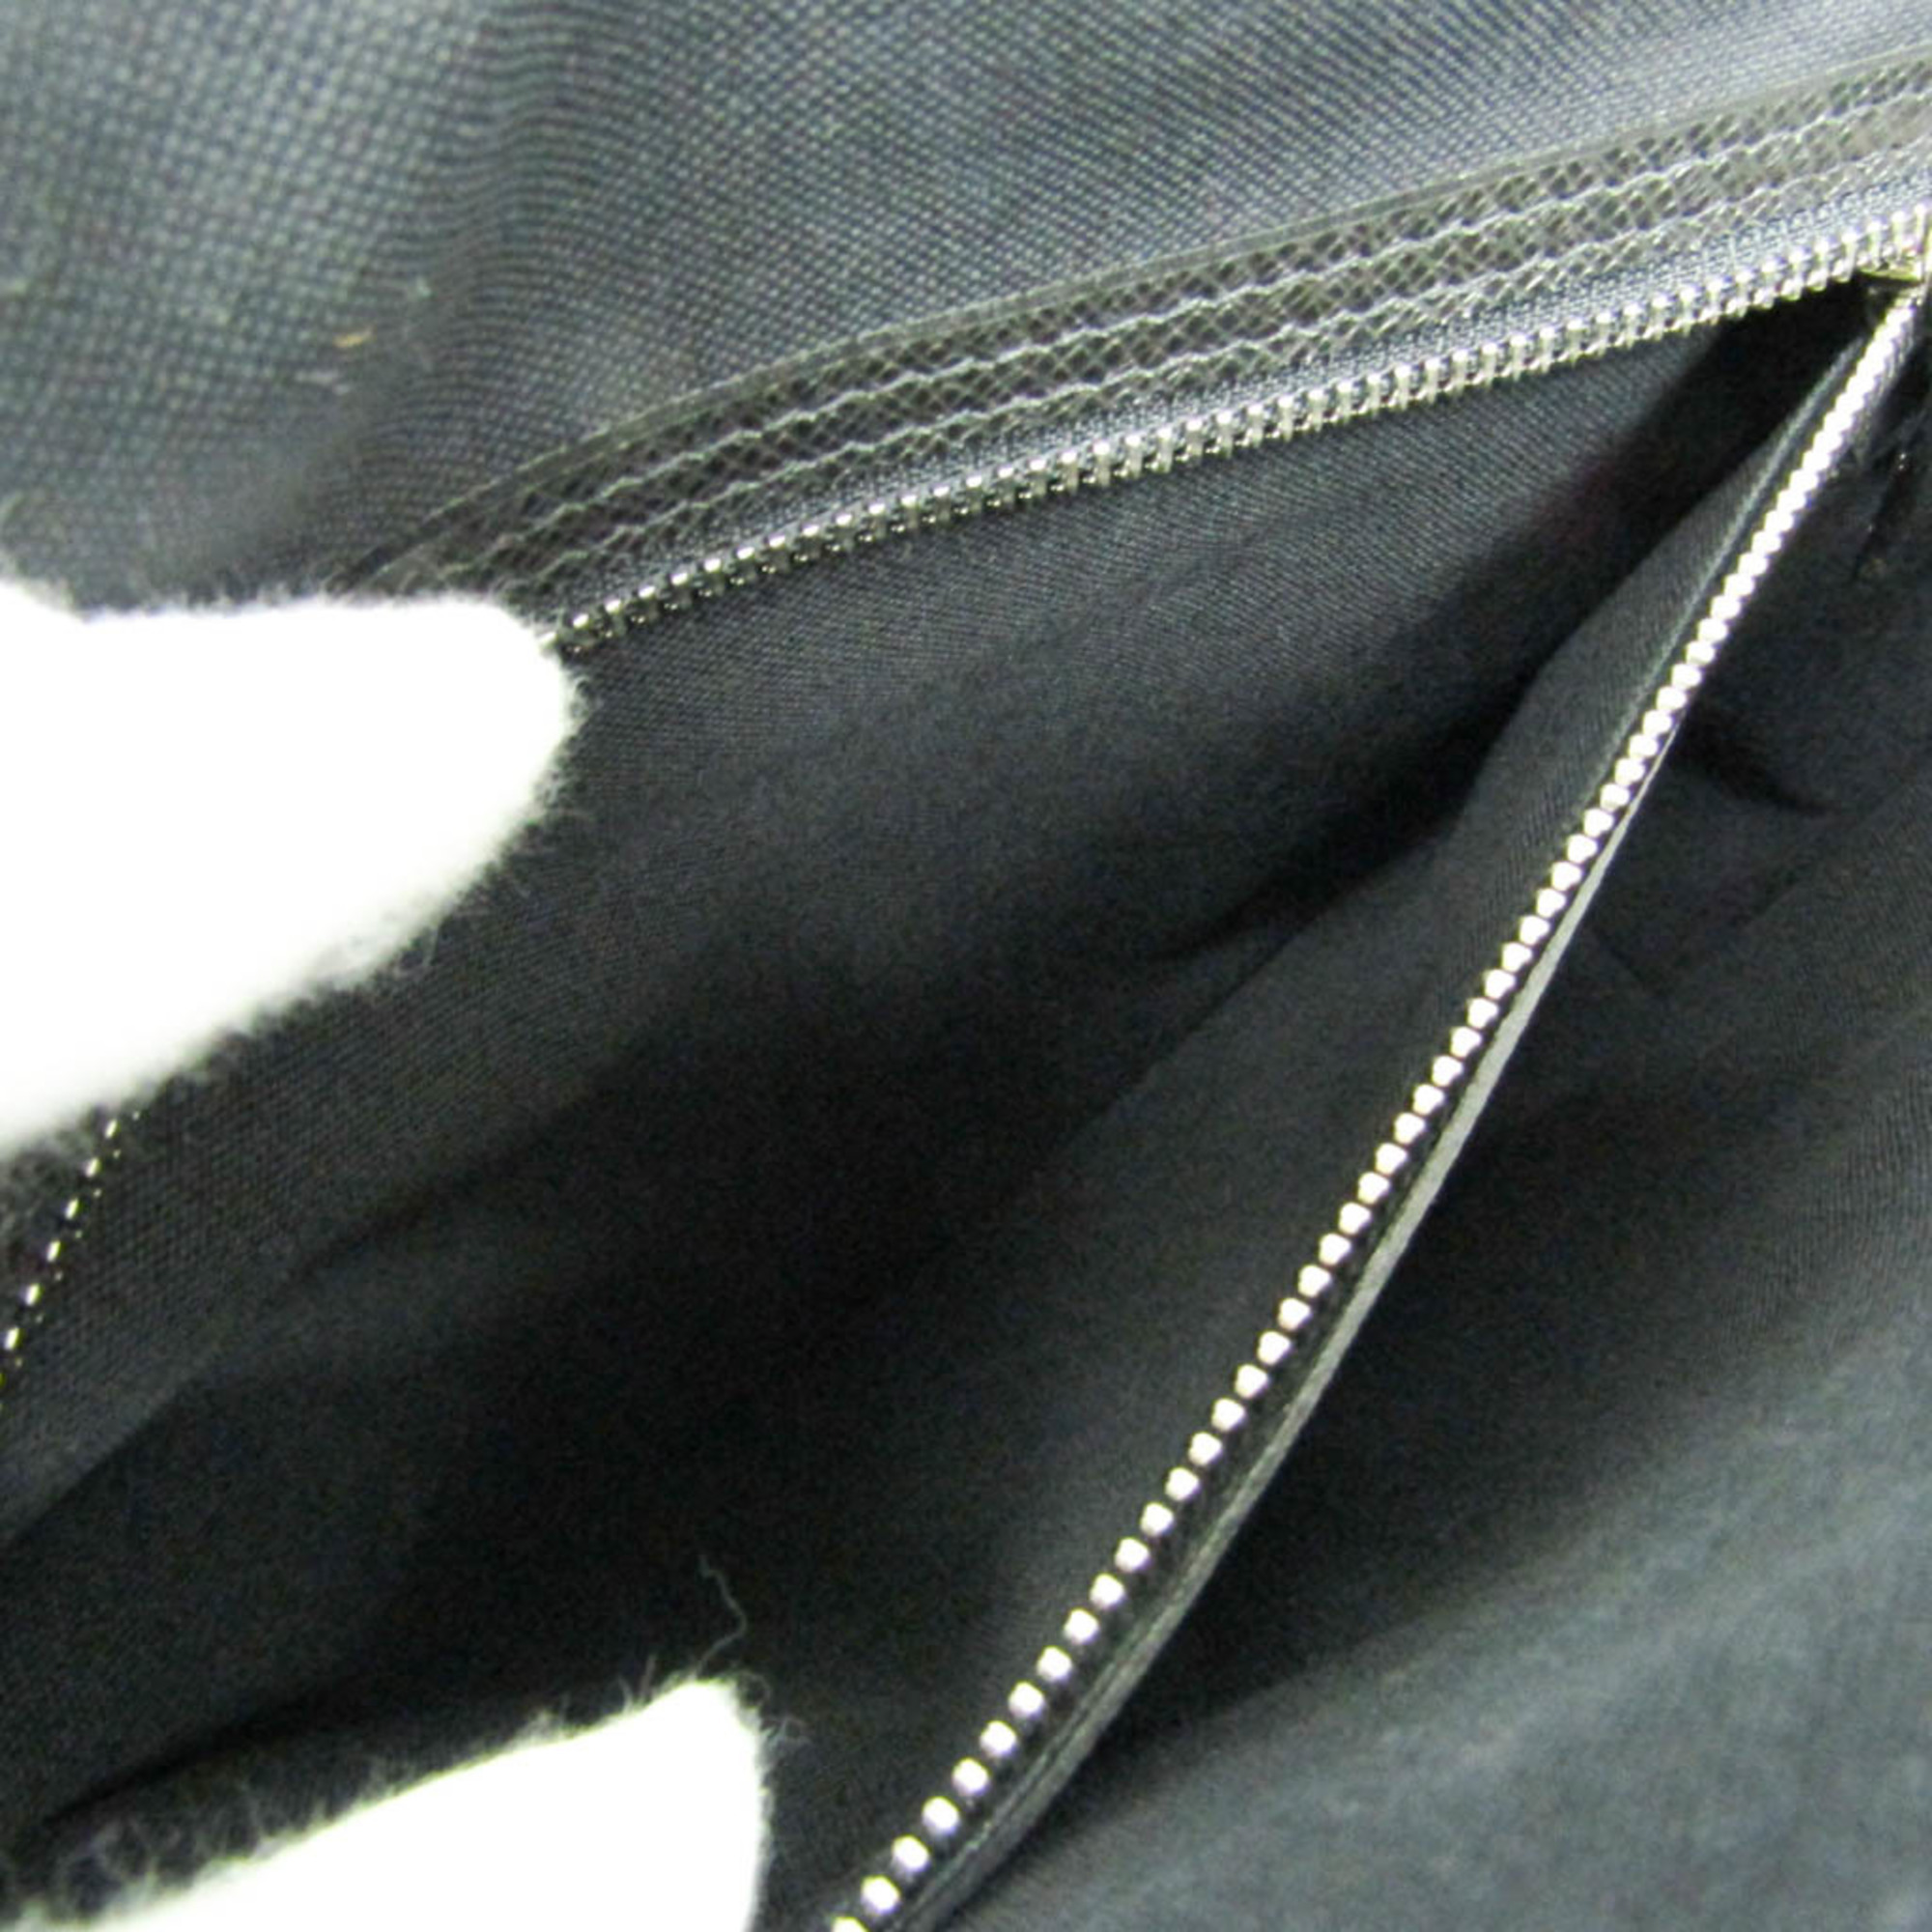 Louis Vuitton Taiga Roman MM M32682 Men's Shoulder Bag Ardoise